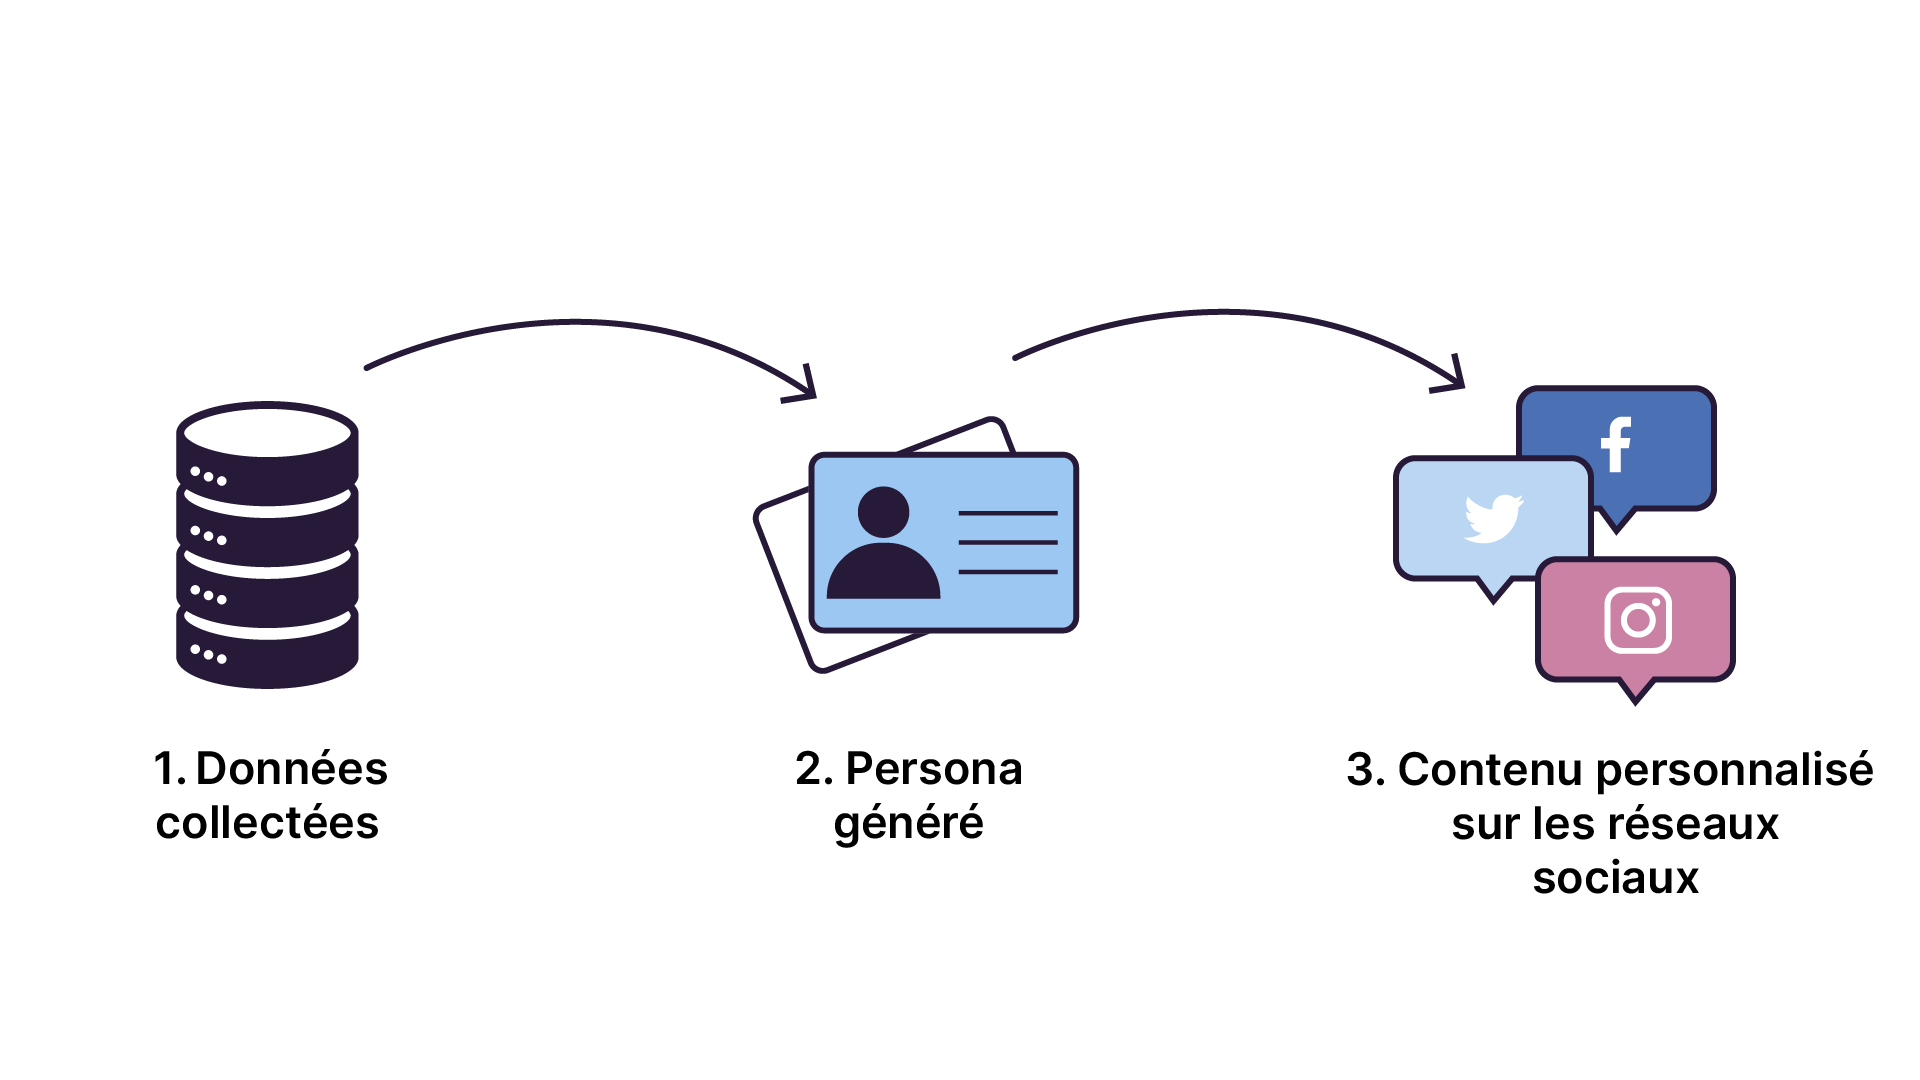 La production d'un contenu personnalisé passe par une phase de collecte de données à partir desquelles des personas seront générés afin de créer un contenu personnalisé à diffuser sur les réseaux sociaux